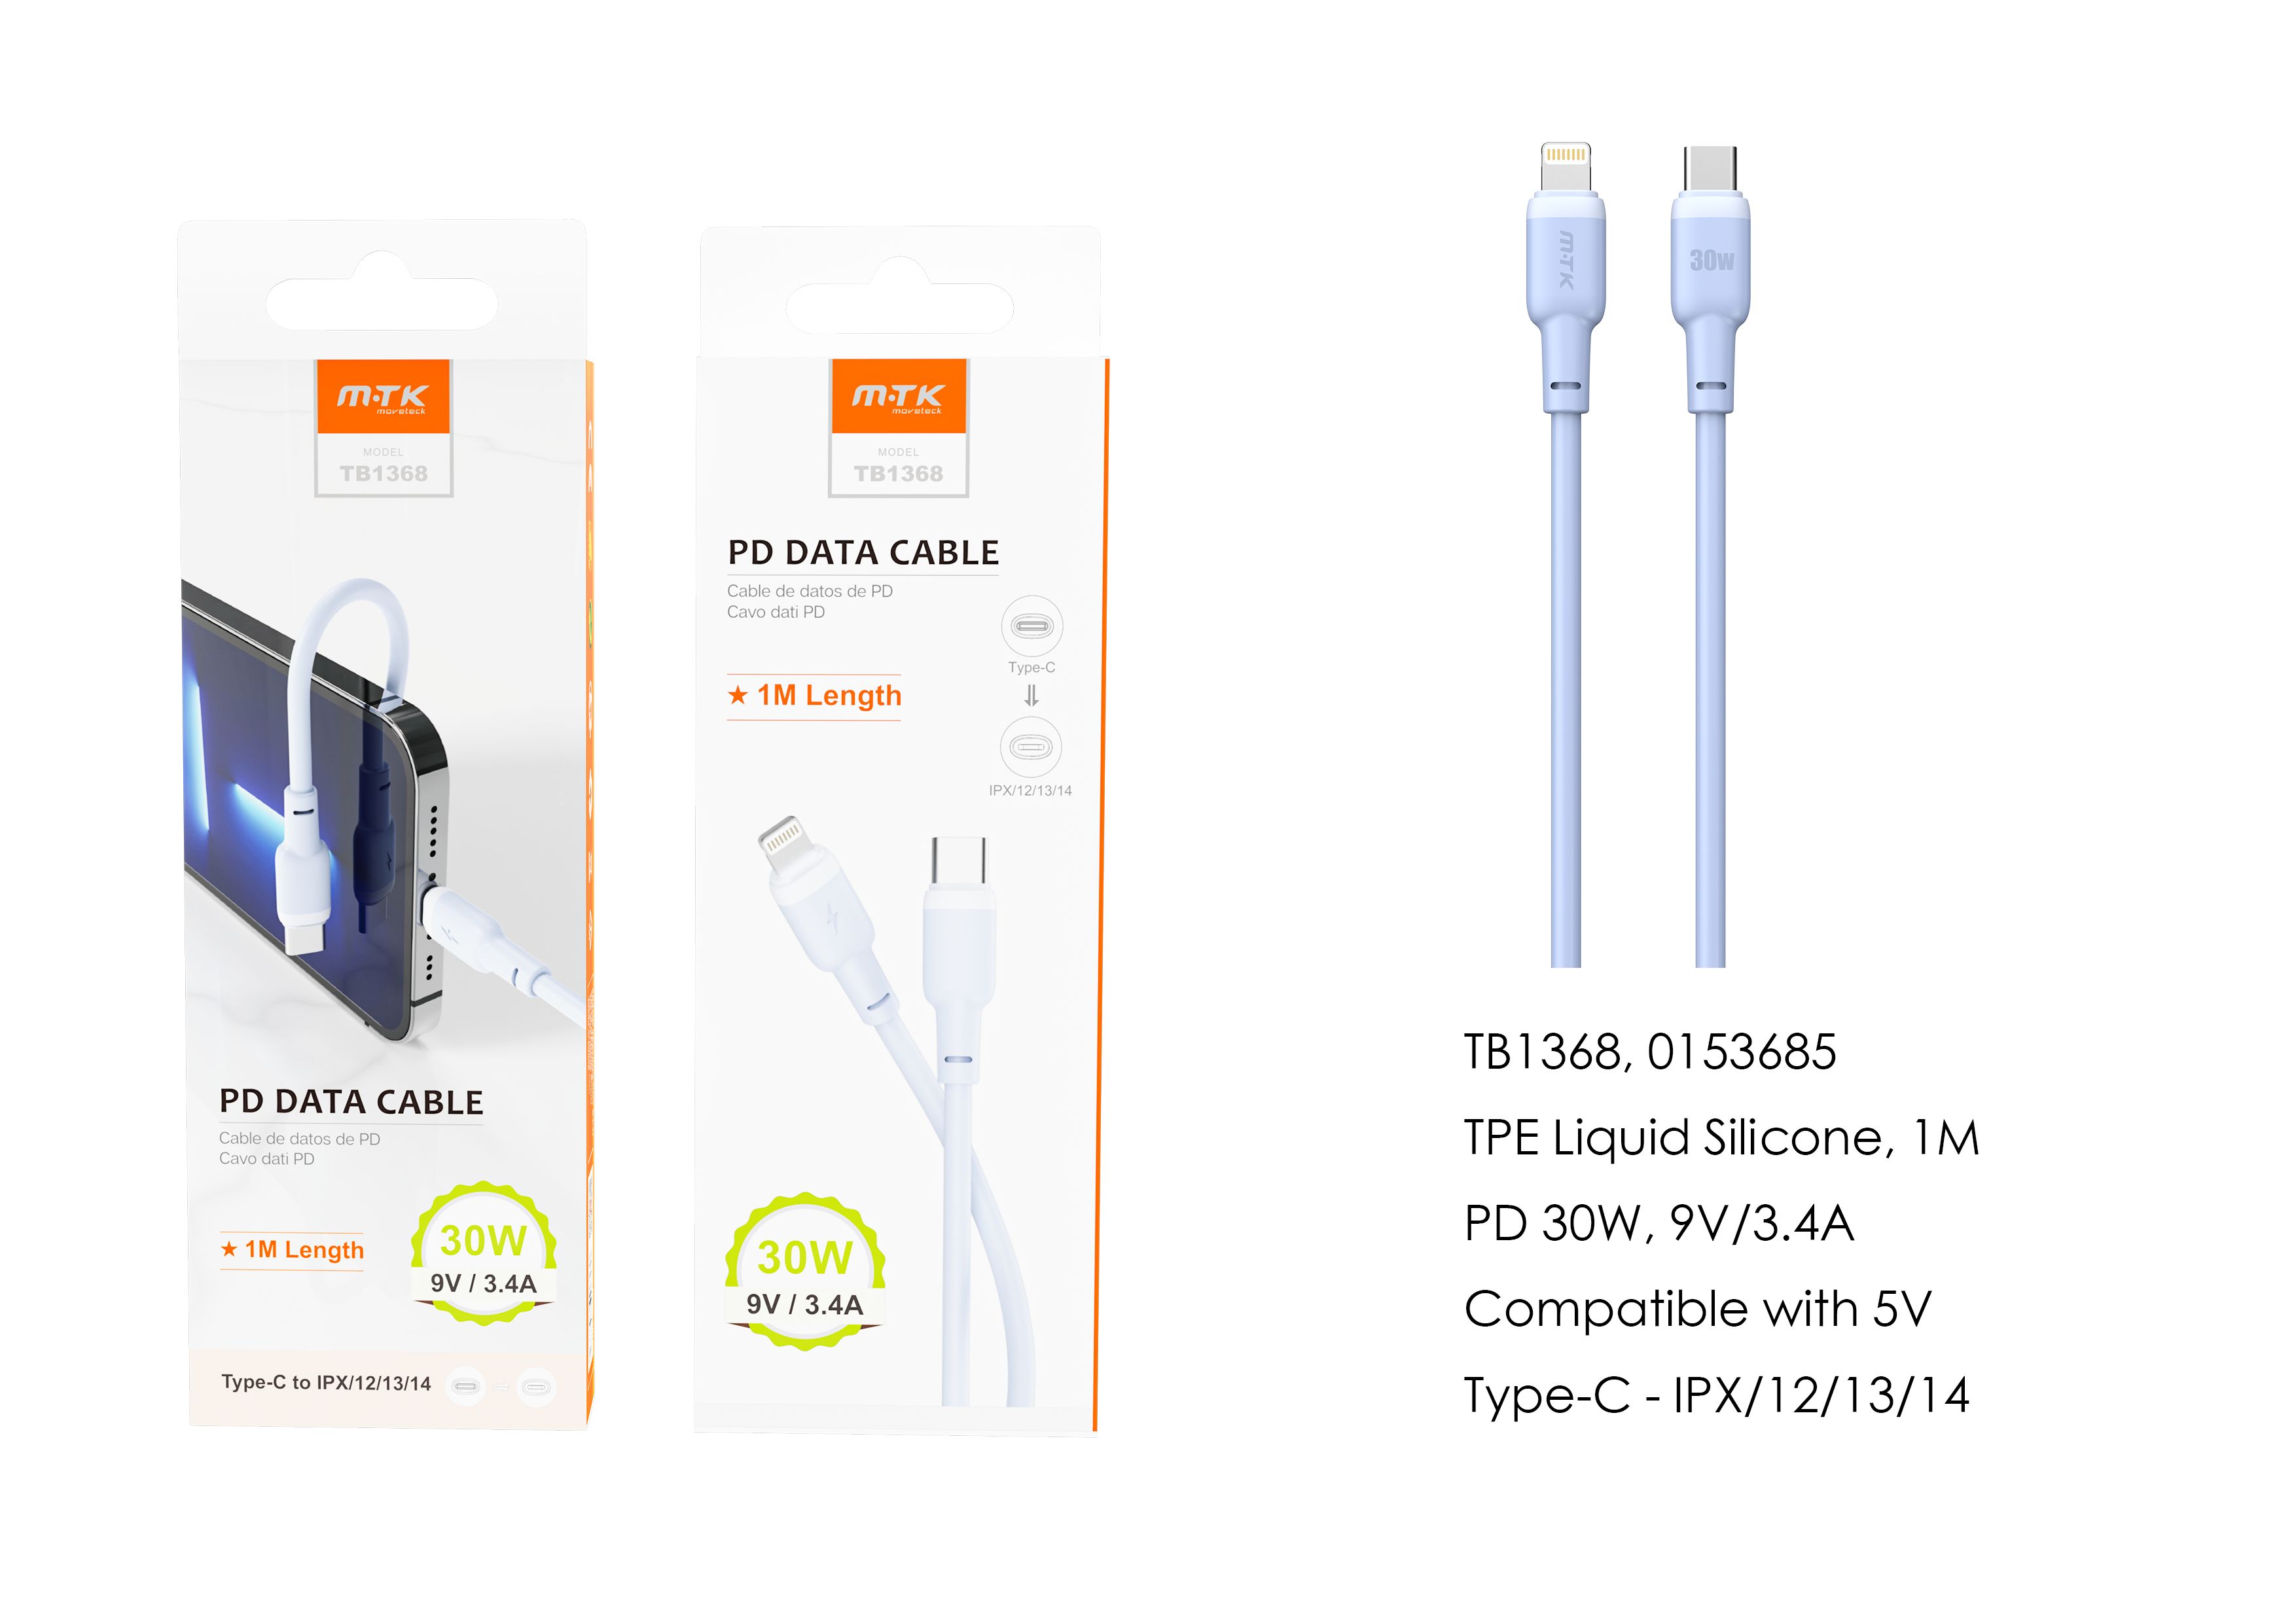 TB1368 AZ Cable de datos Evie para Type-C a Lightning , Carga Rapida PD, 30W/9V/3.4A, 1M, Azul